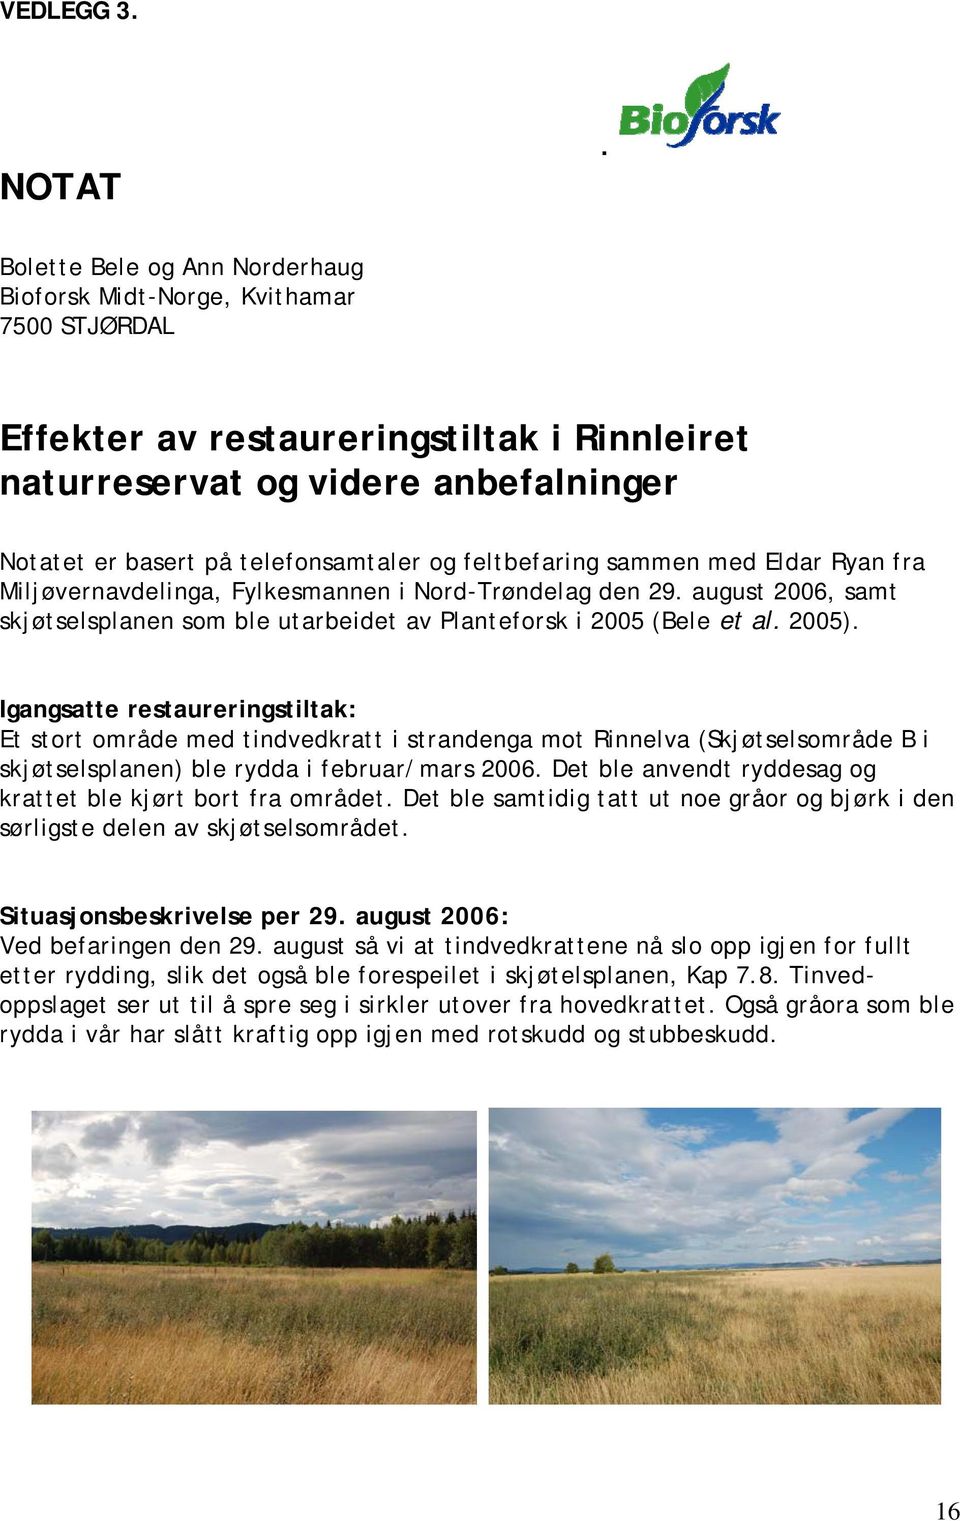 feltbefaring sammen med Eldar Ryan fra Miljøvernavdelinga, Fylkesmannen i Nord-Trøndelag den 29. august 2006, samt skjøtselsplanen som ble utarbeidet av Planteforsk i 2005 (Bele et al. 2005).